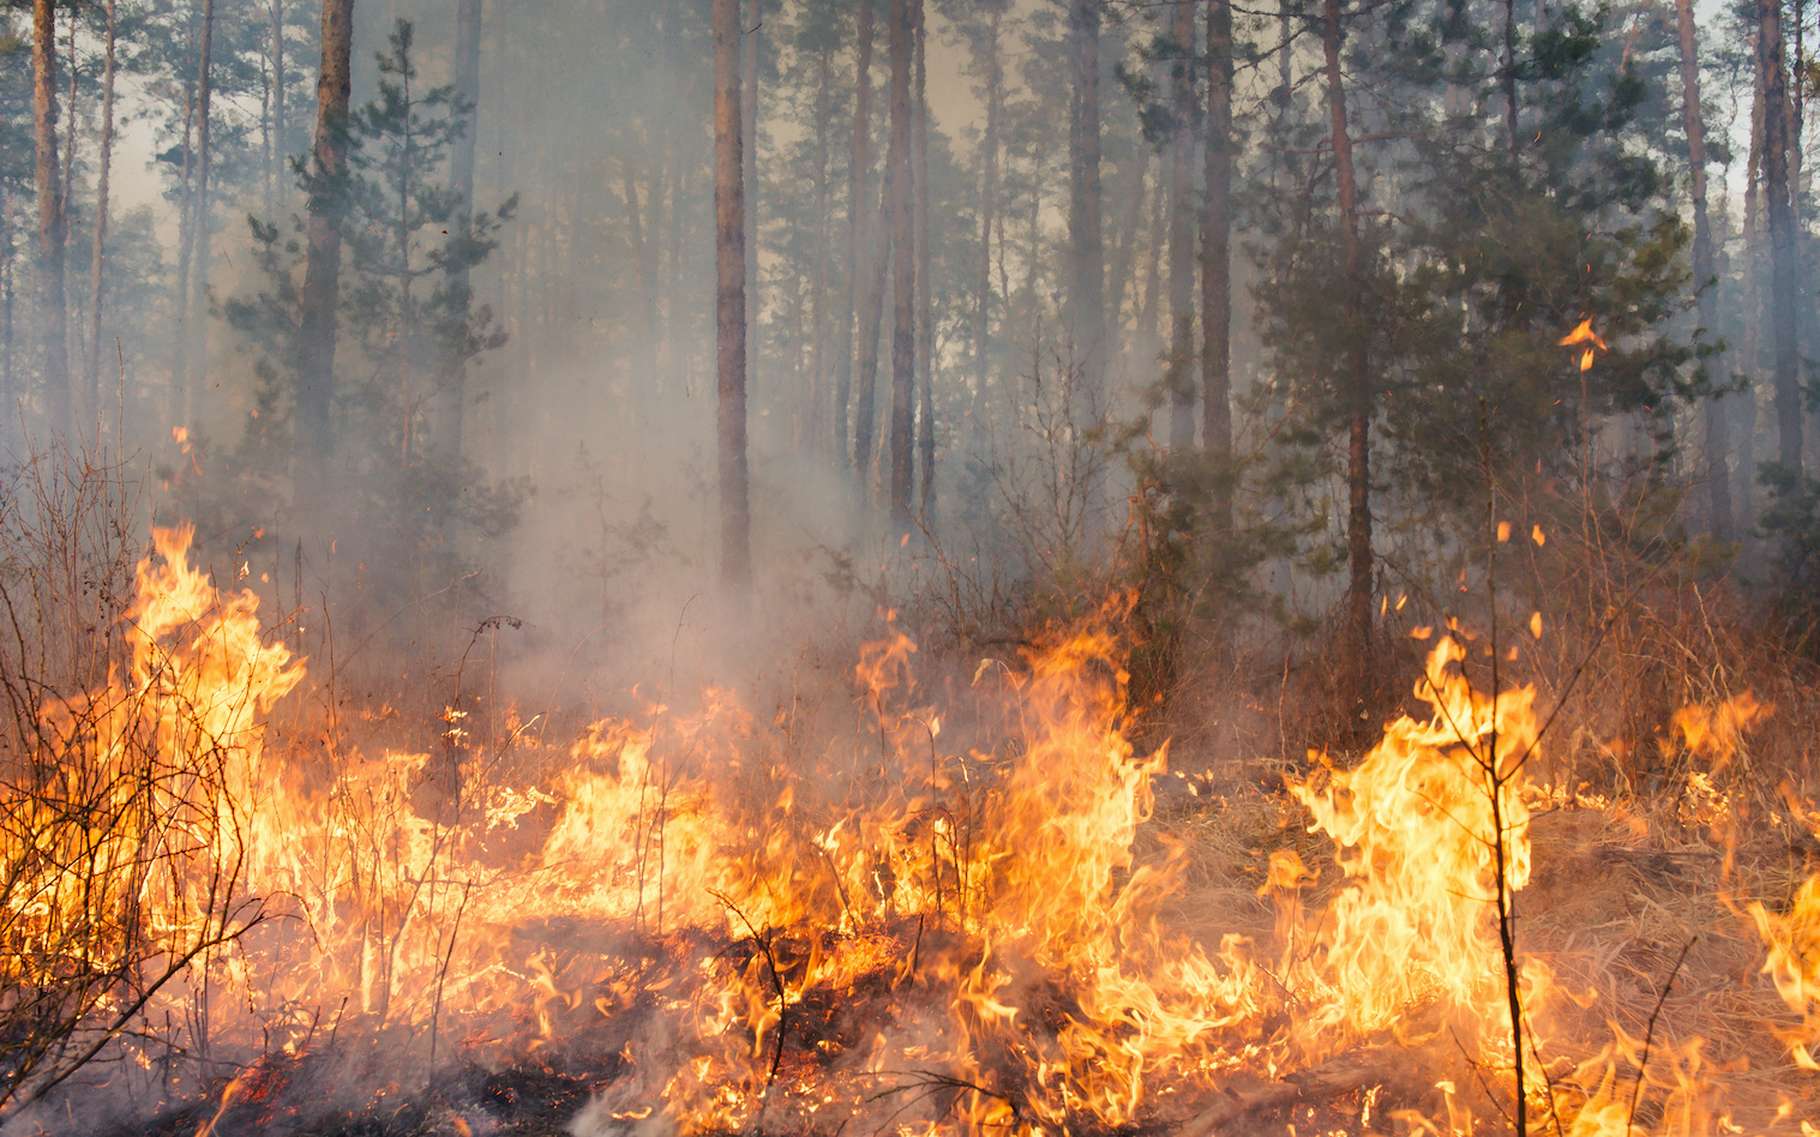 Avec le changement climatique, la hausse des températures et la multiplication des sécheresses, notamment, le risque de feux de forêt devrait aller grandissant. © gilitukha, Adobe Stock